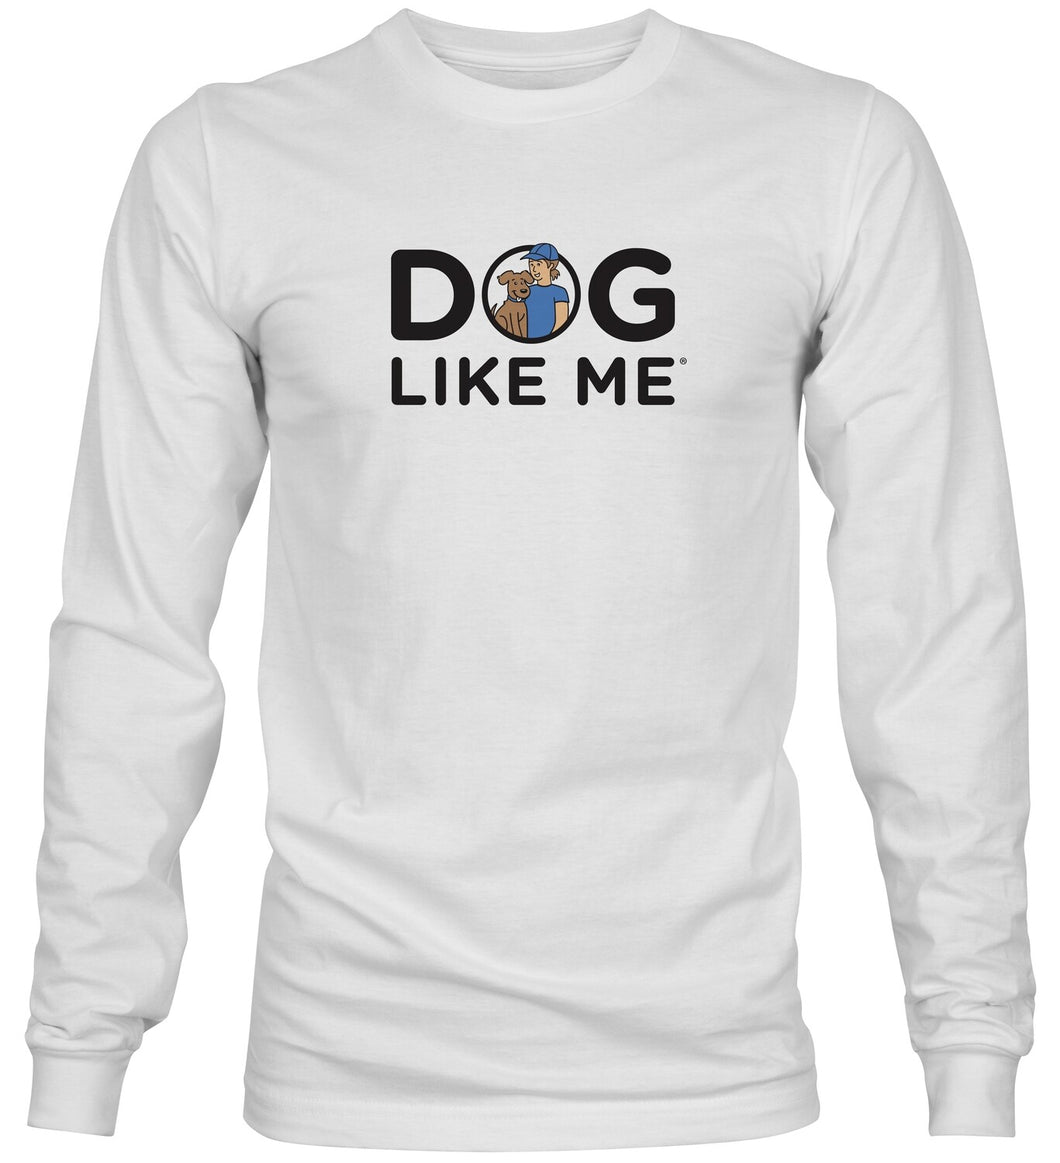 Dog Like Me Long sleeveshit